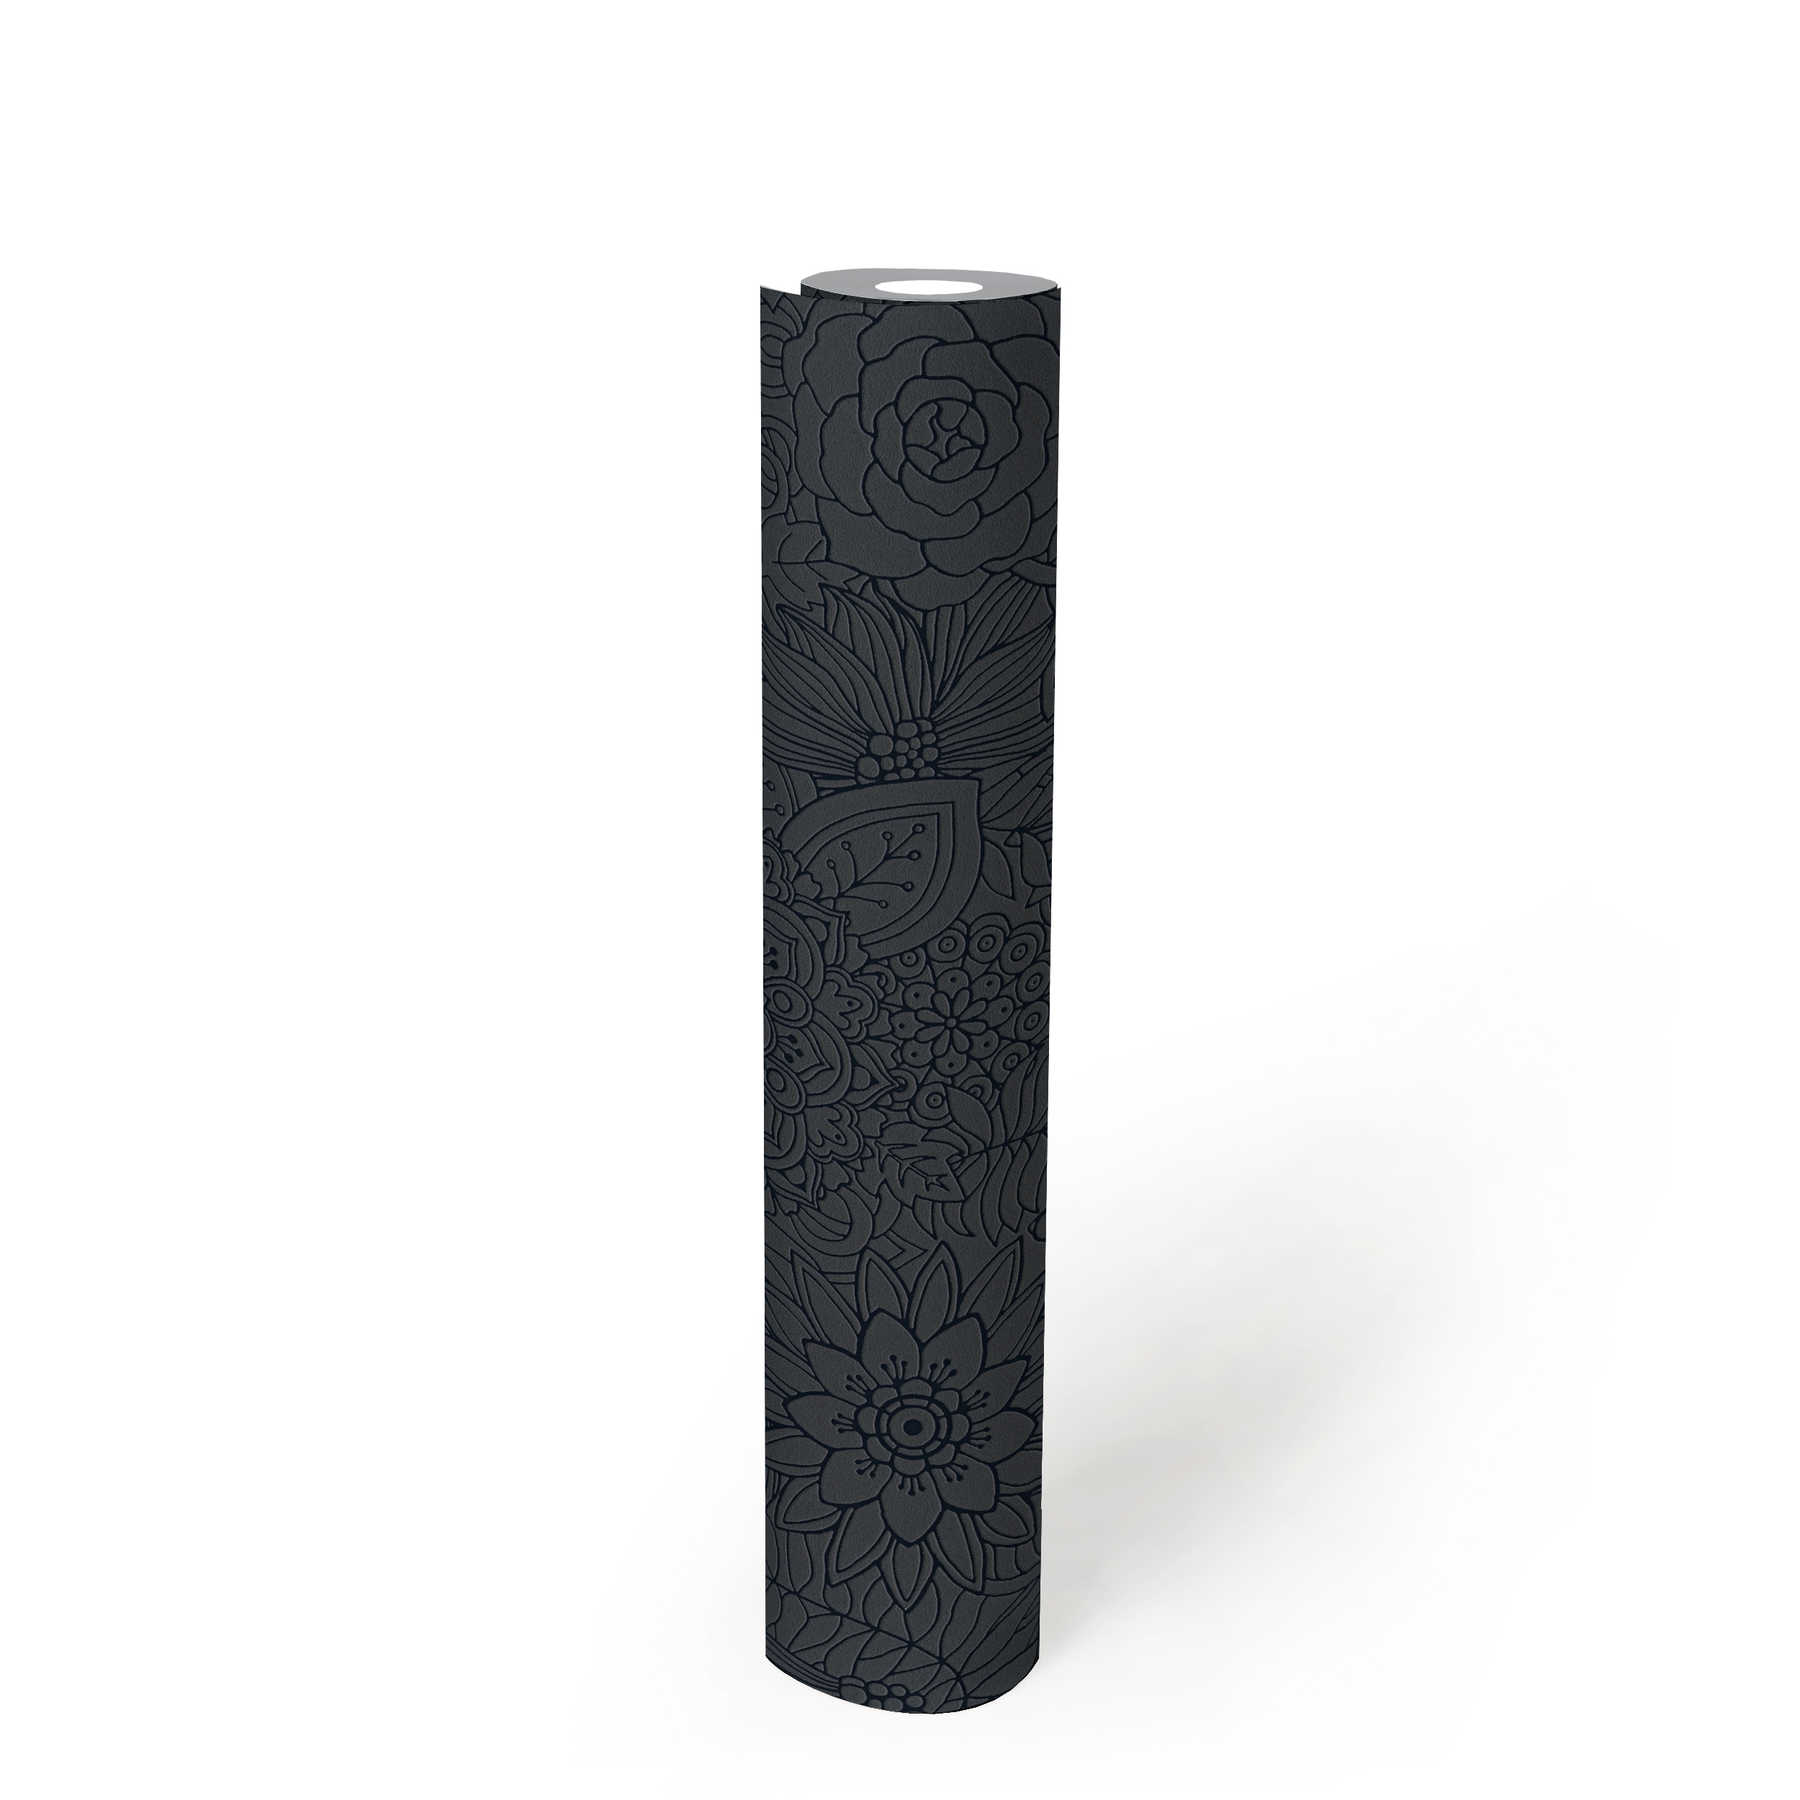             Black non-woven wallpaper floral pattern, matte & glossy - Black, Metallic
        